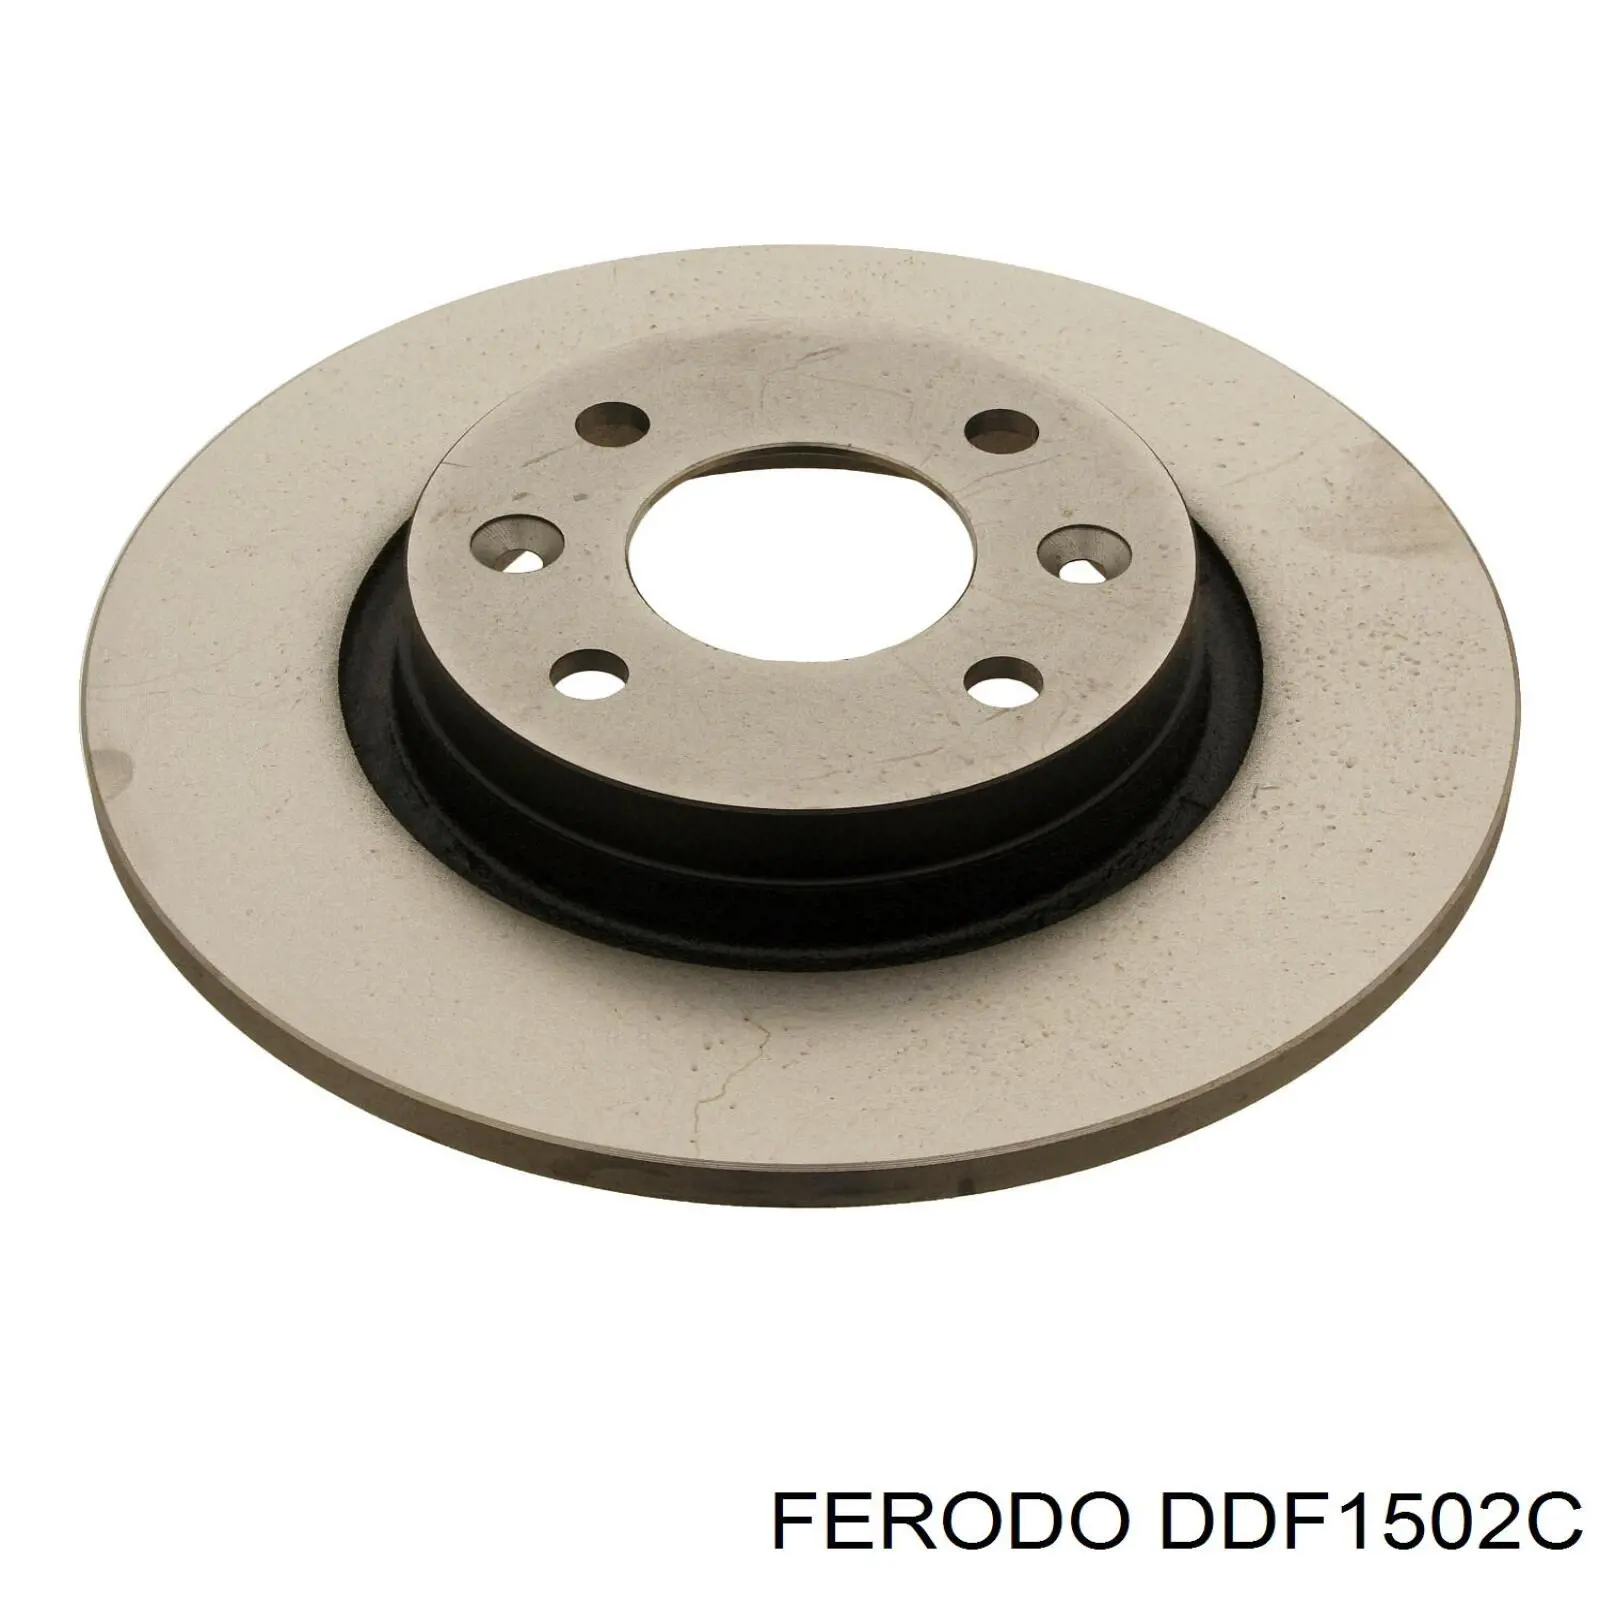 DDF1502C Ferodo disco de freno delantero